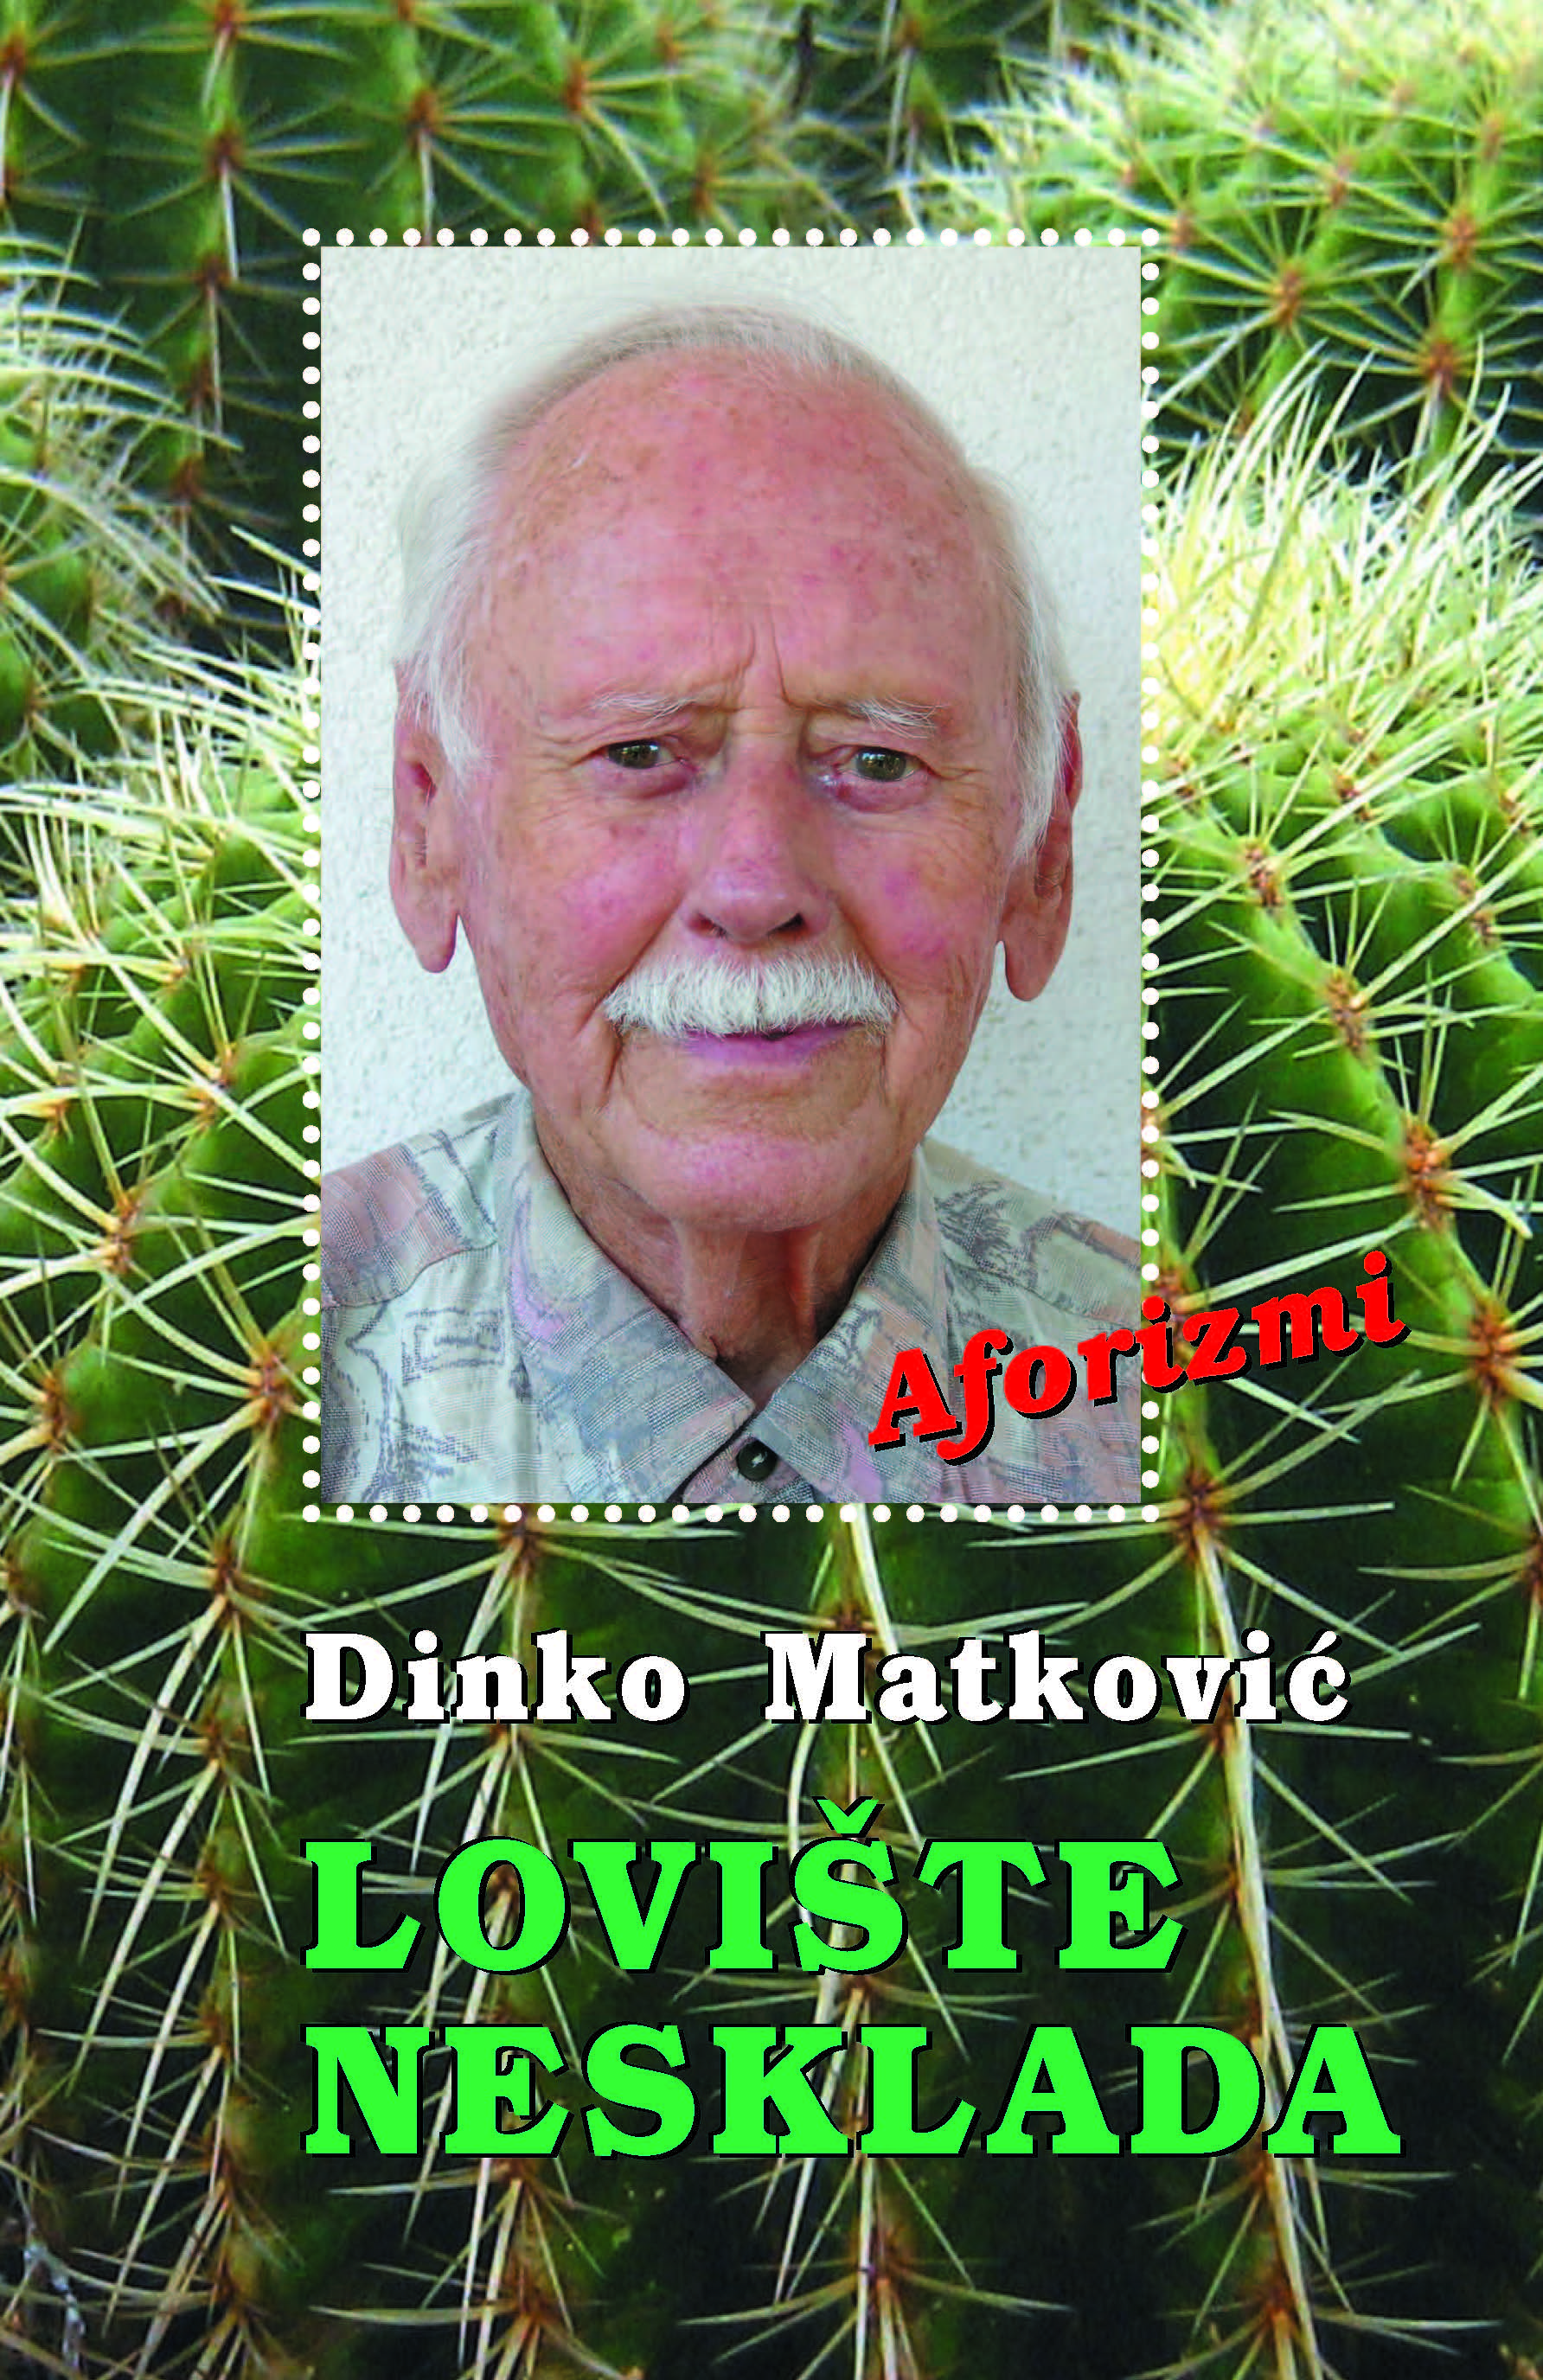 Dinko Matković - Lovište nesklada